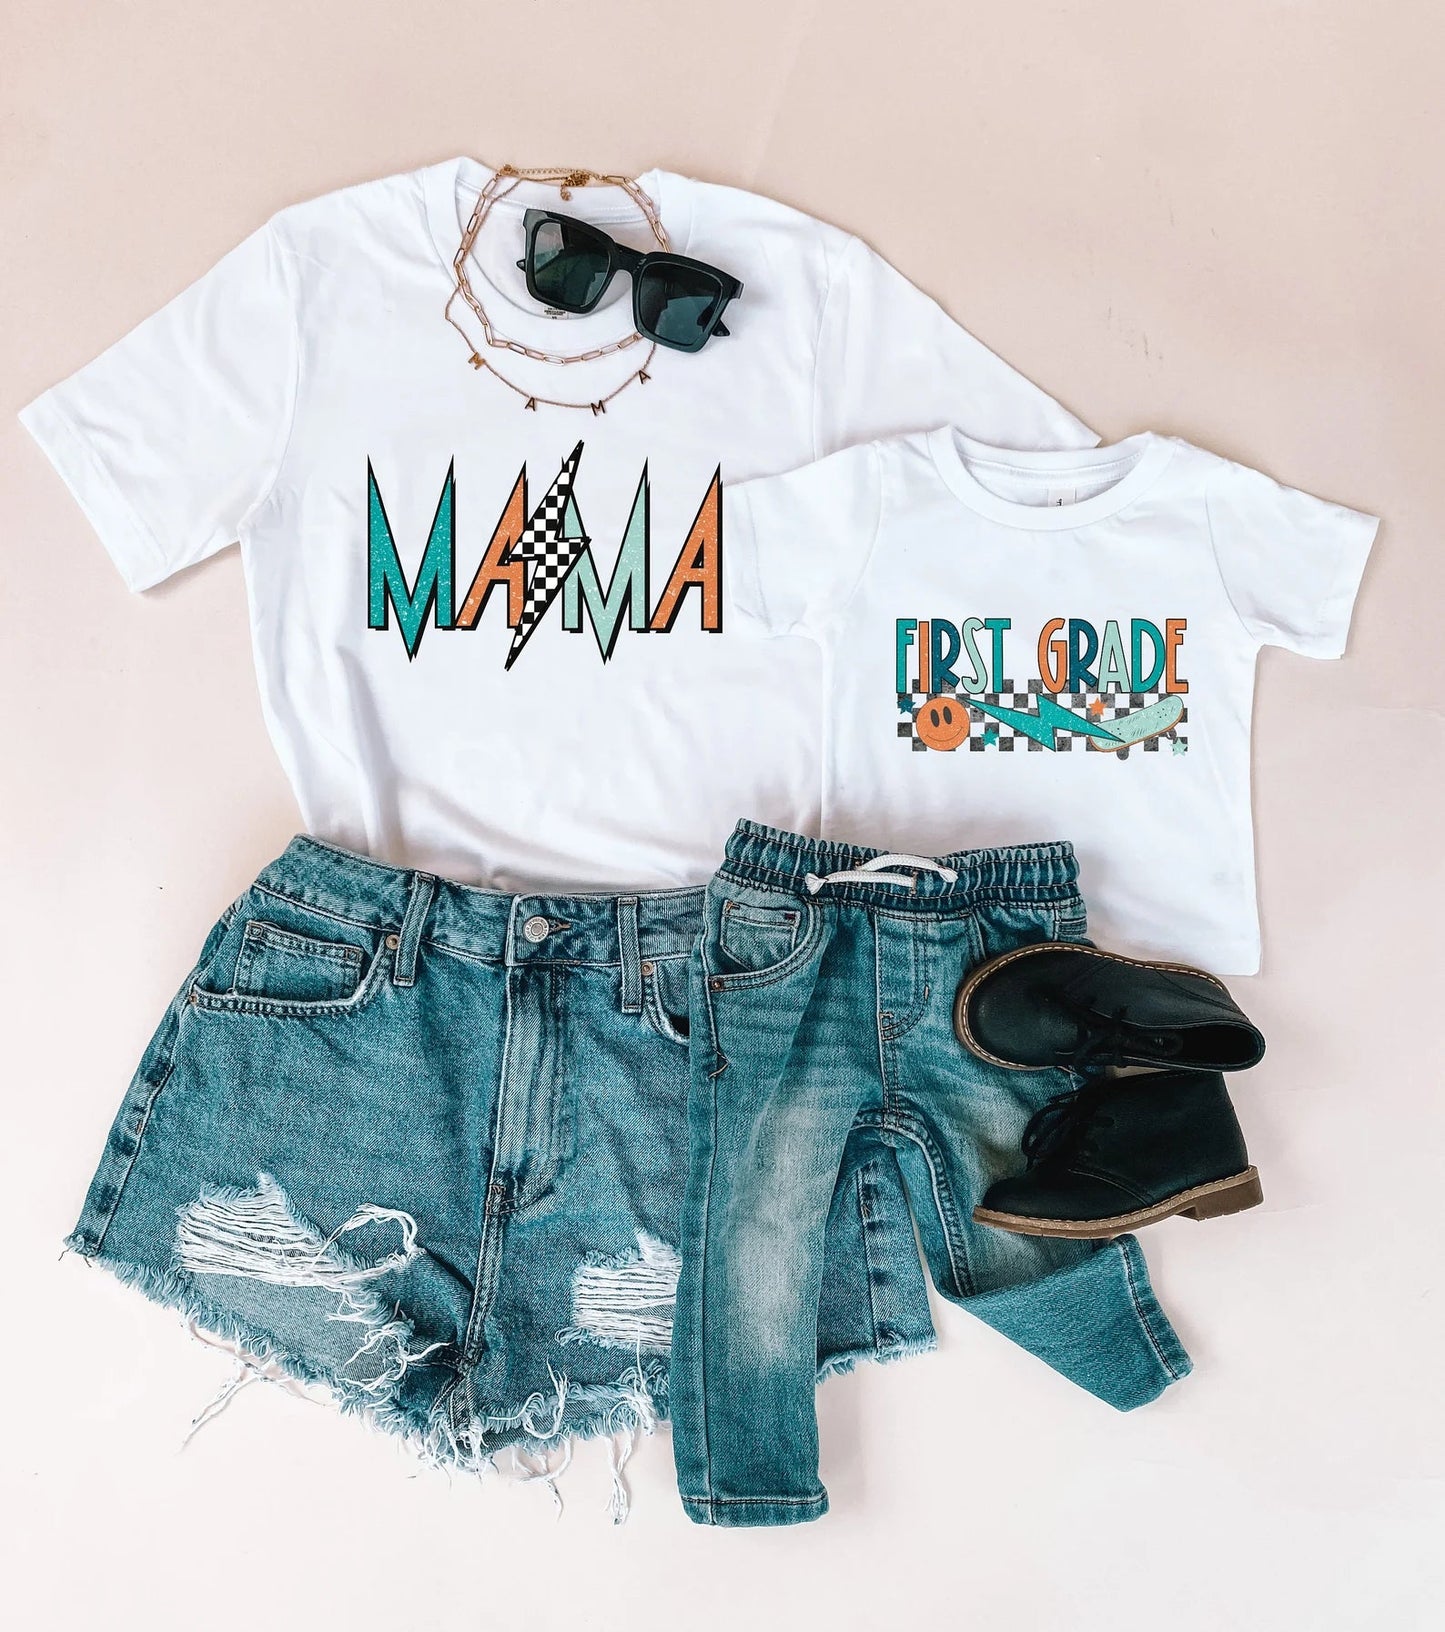 First Grade Rocker Boy Mama Shirts Matching Shirts - LITTLE MIA BELLA